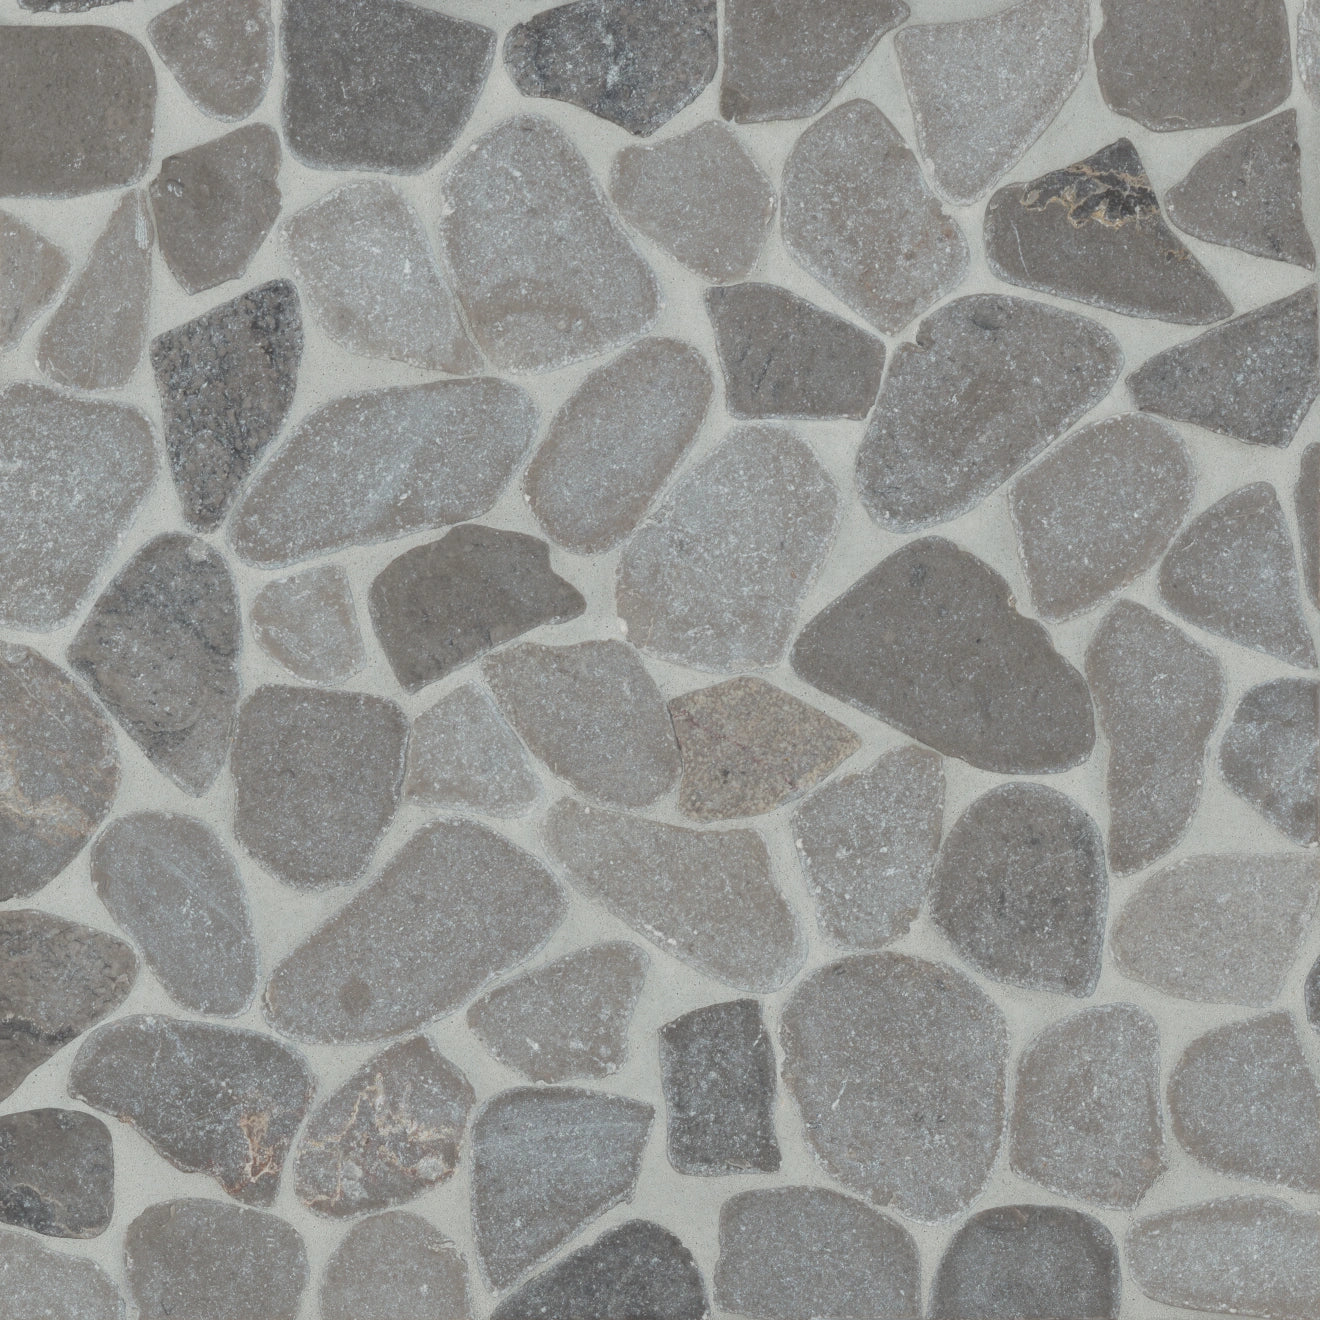 Waterbrook Medium Sliced Pebble Mosaic Tile